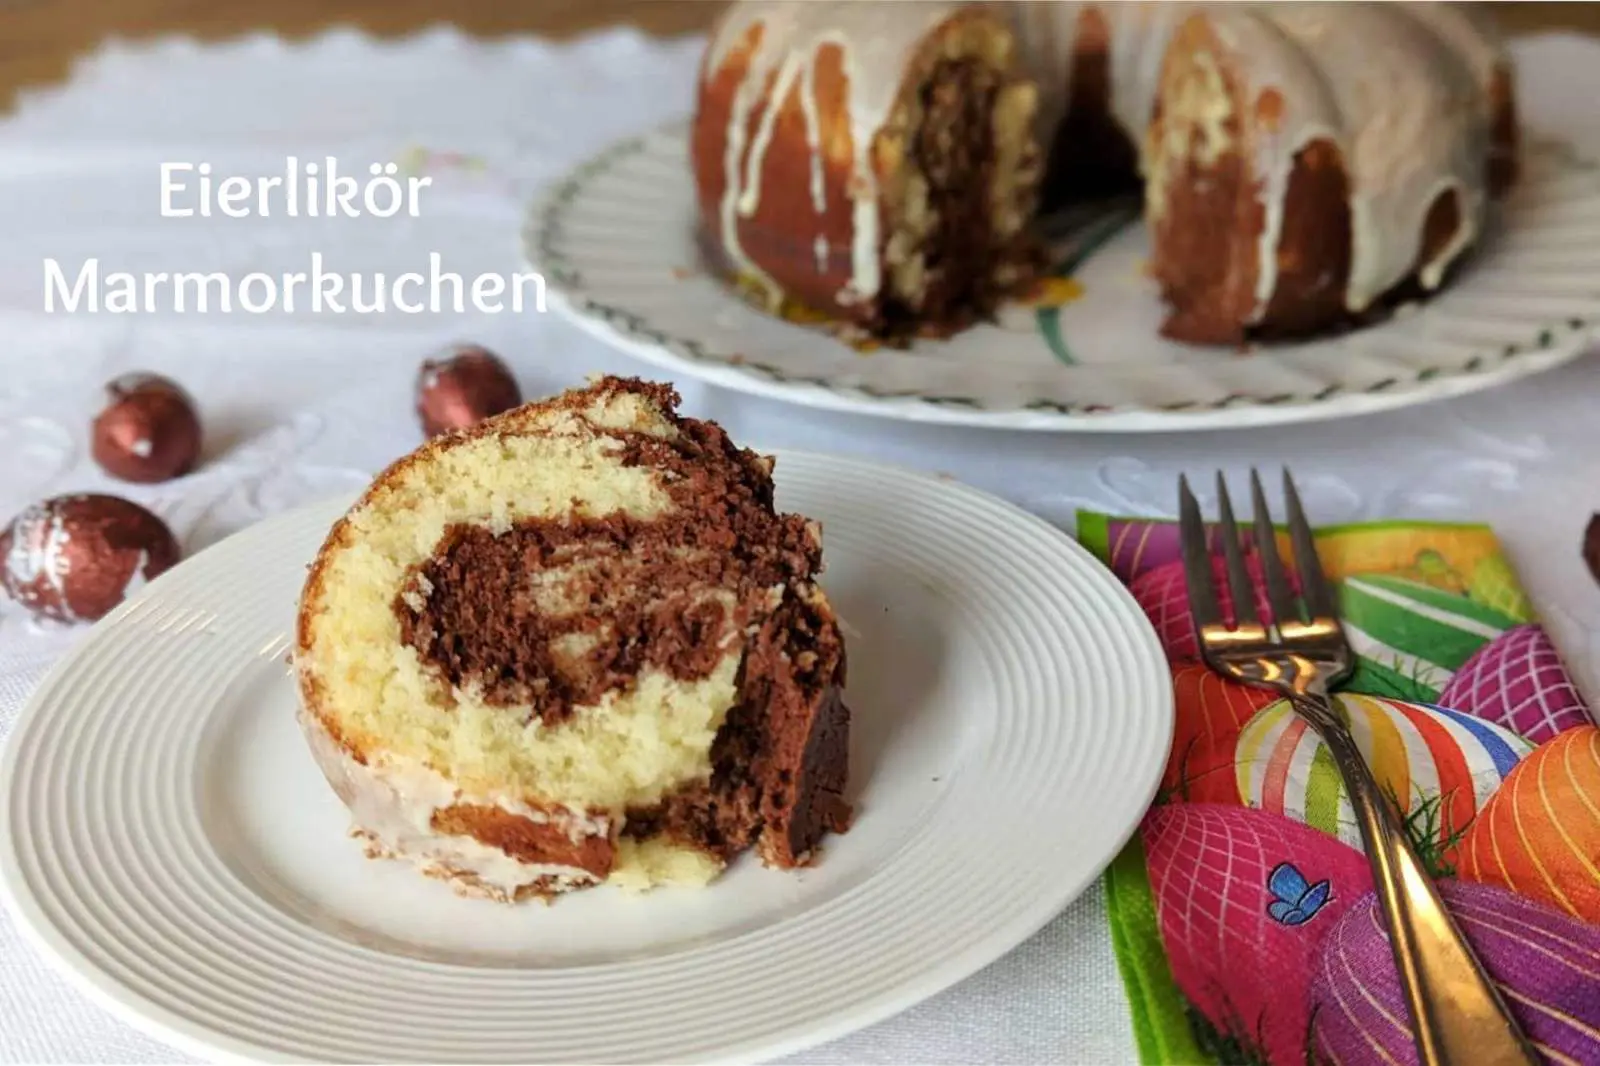 German Marble Cake Recipe with Eierlikör- Eierlikör Marmorkuchen